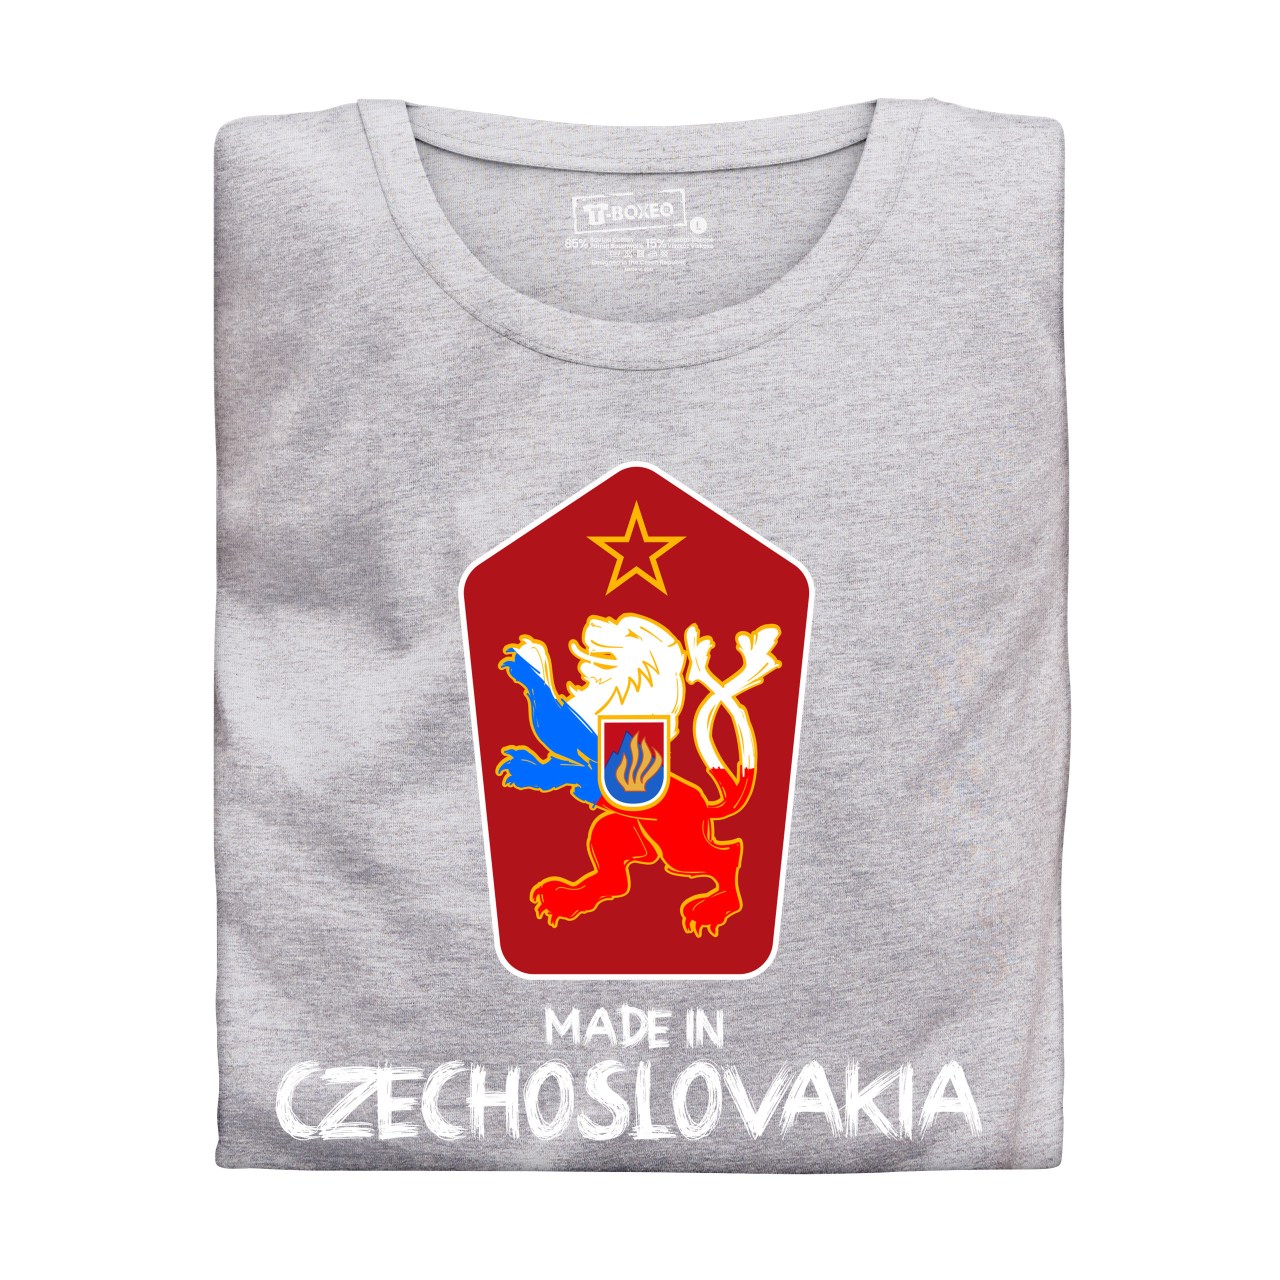 Pánské tričko s potiskem “Made in Czechoslovakia”